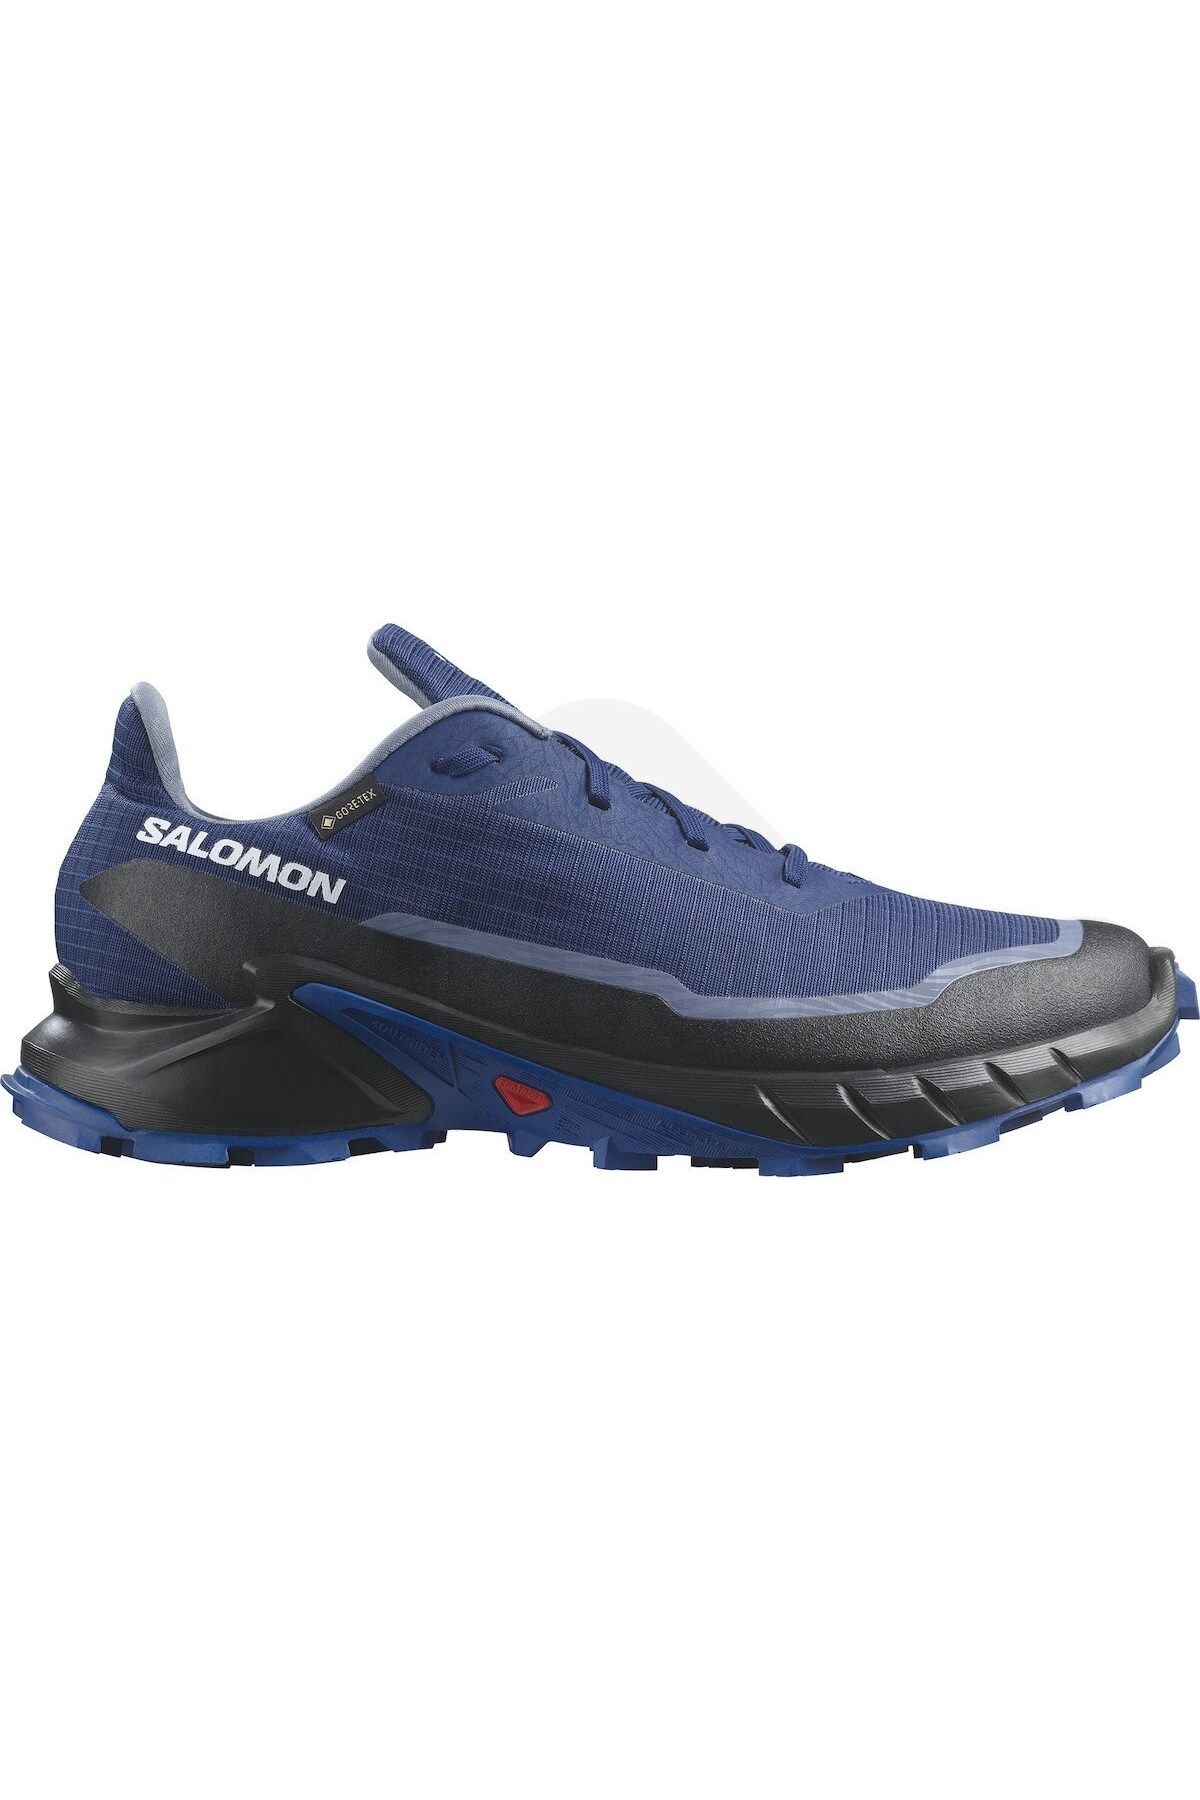 Salomon Alphacross 5 Gtx Erkek Patika Koşusu Ayakkabısı L47309200